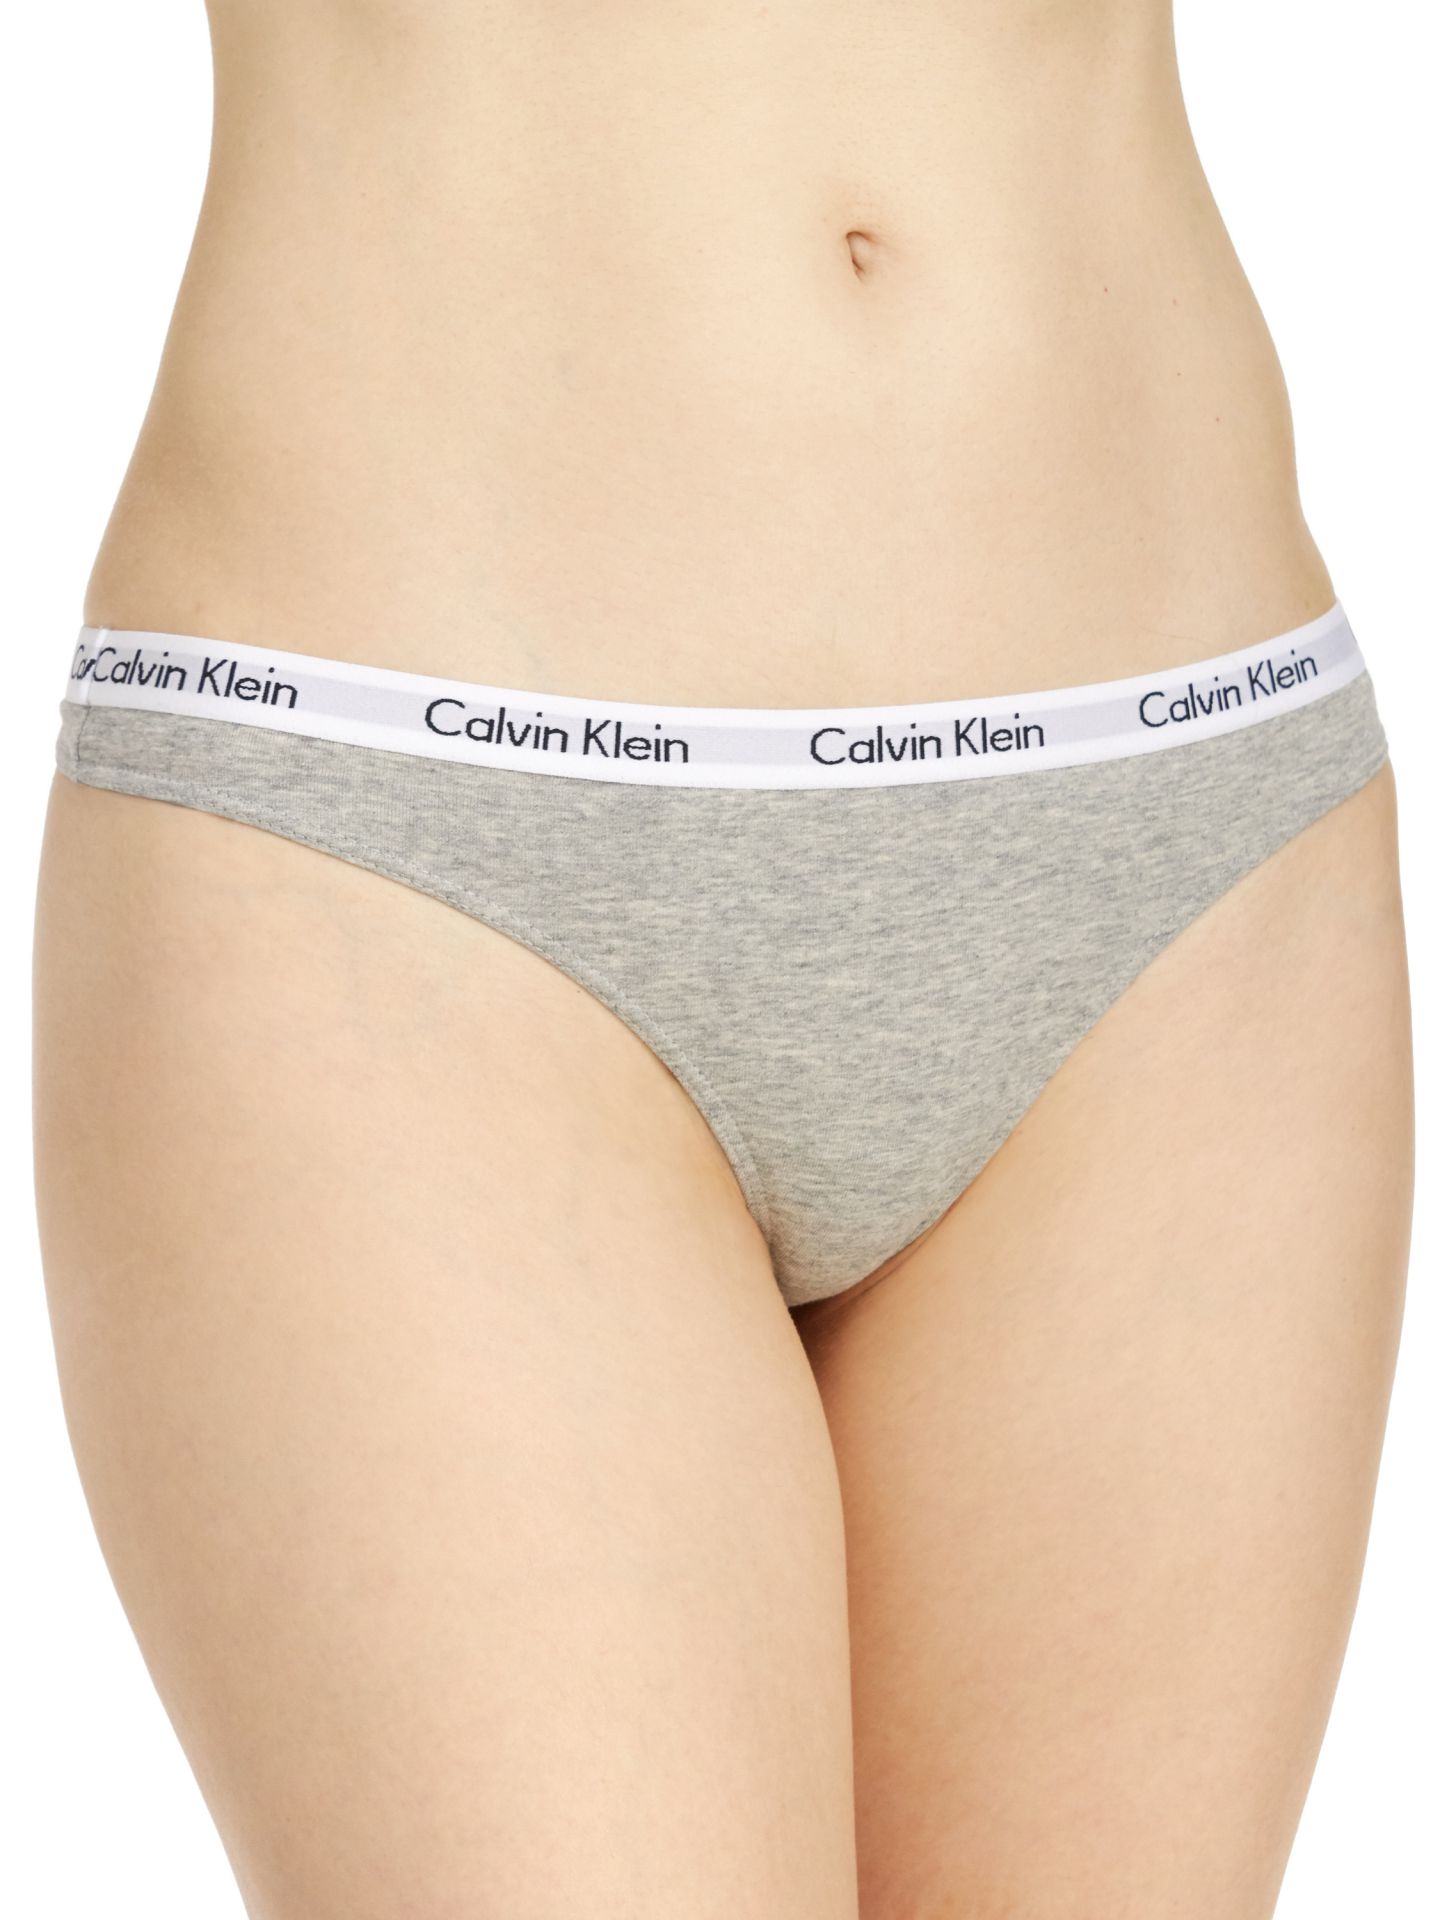 Calvin Klein all-over print shirt - Pack Women's Thong Multicolored QD3587E  - Calvin Klein 3 - 13X